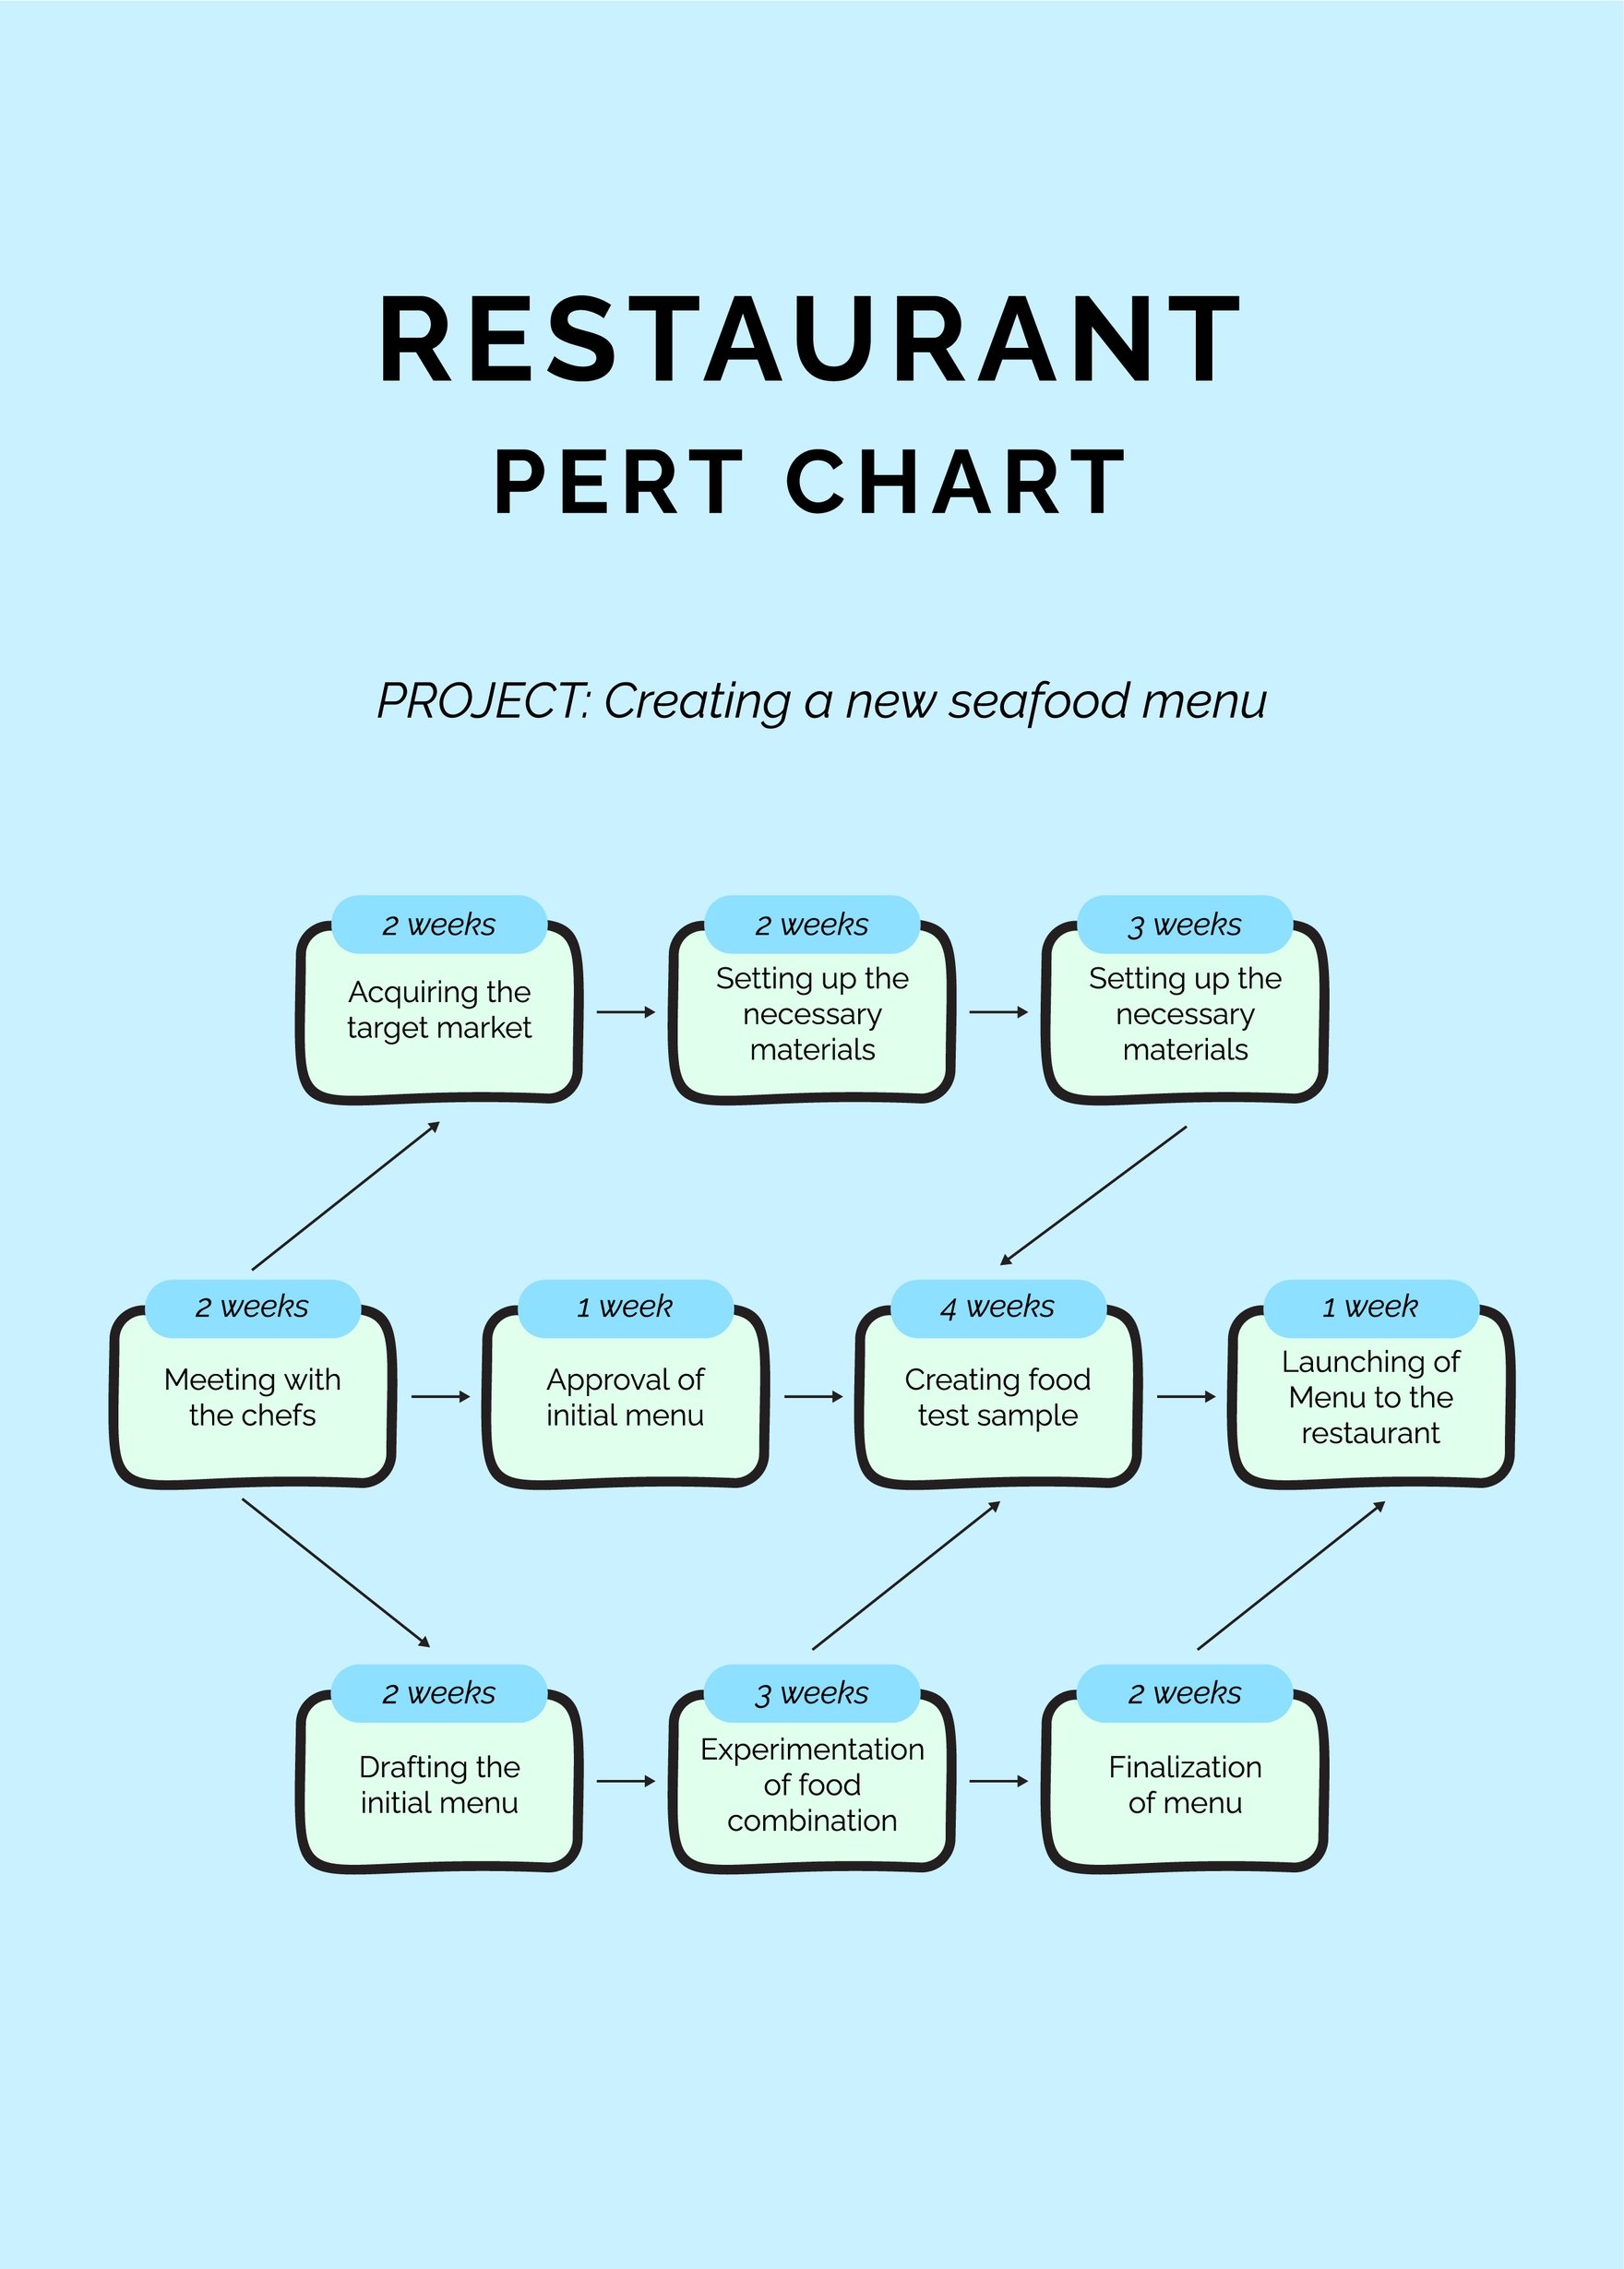 Restaurant PERT Chart